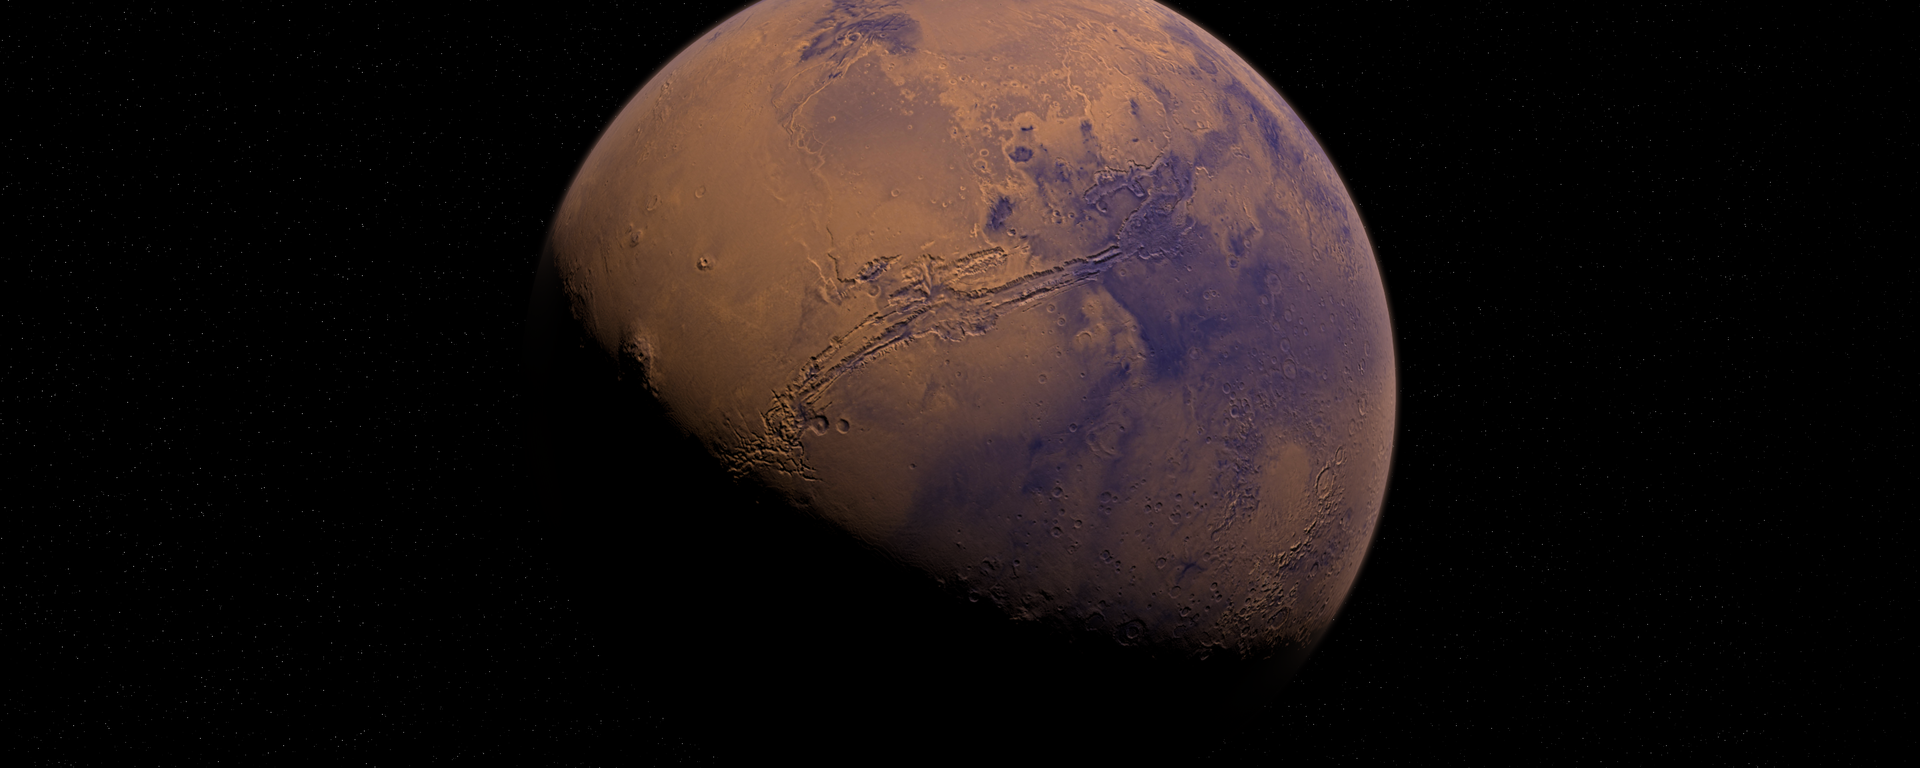 Marte (imagen referencial) - Sputnik Mundo, 1920, 02.04.2020